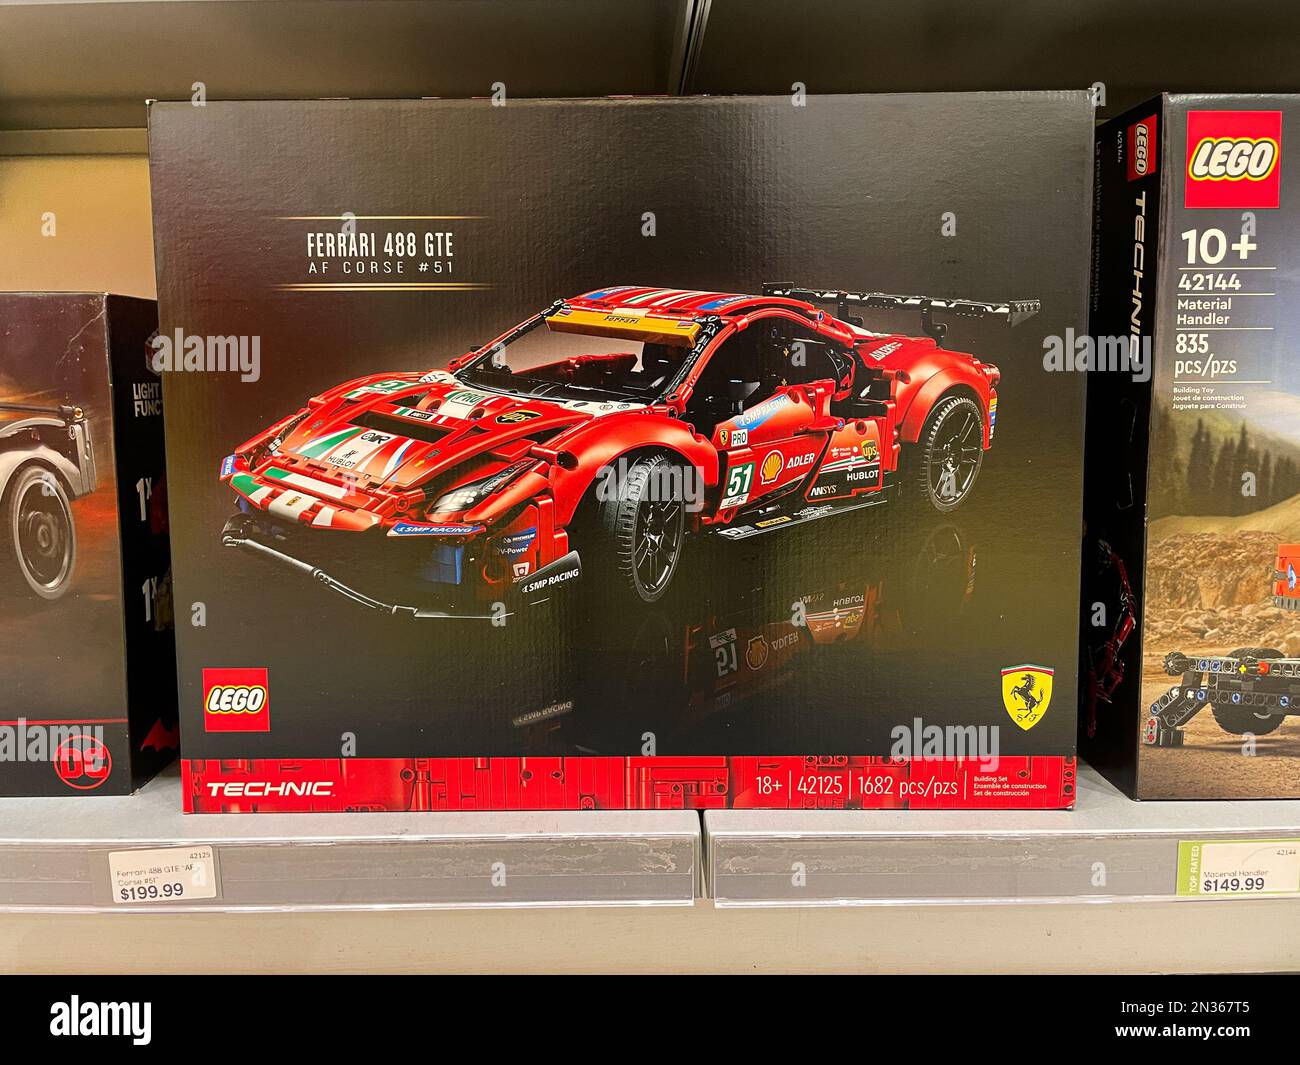 Ferrari 488 GTE lego set. Stock Photo